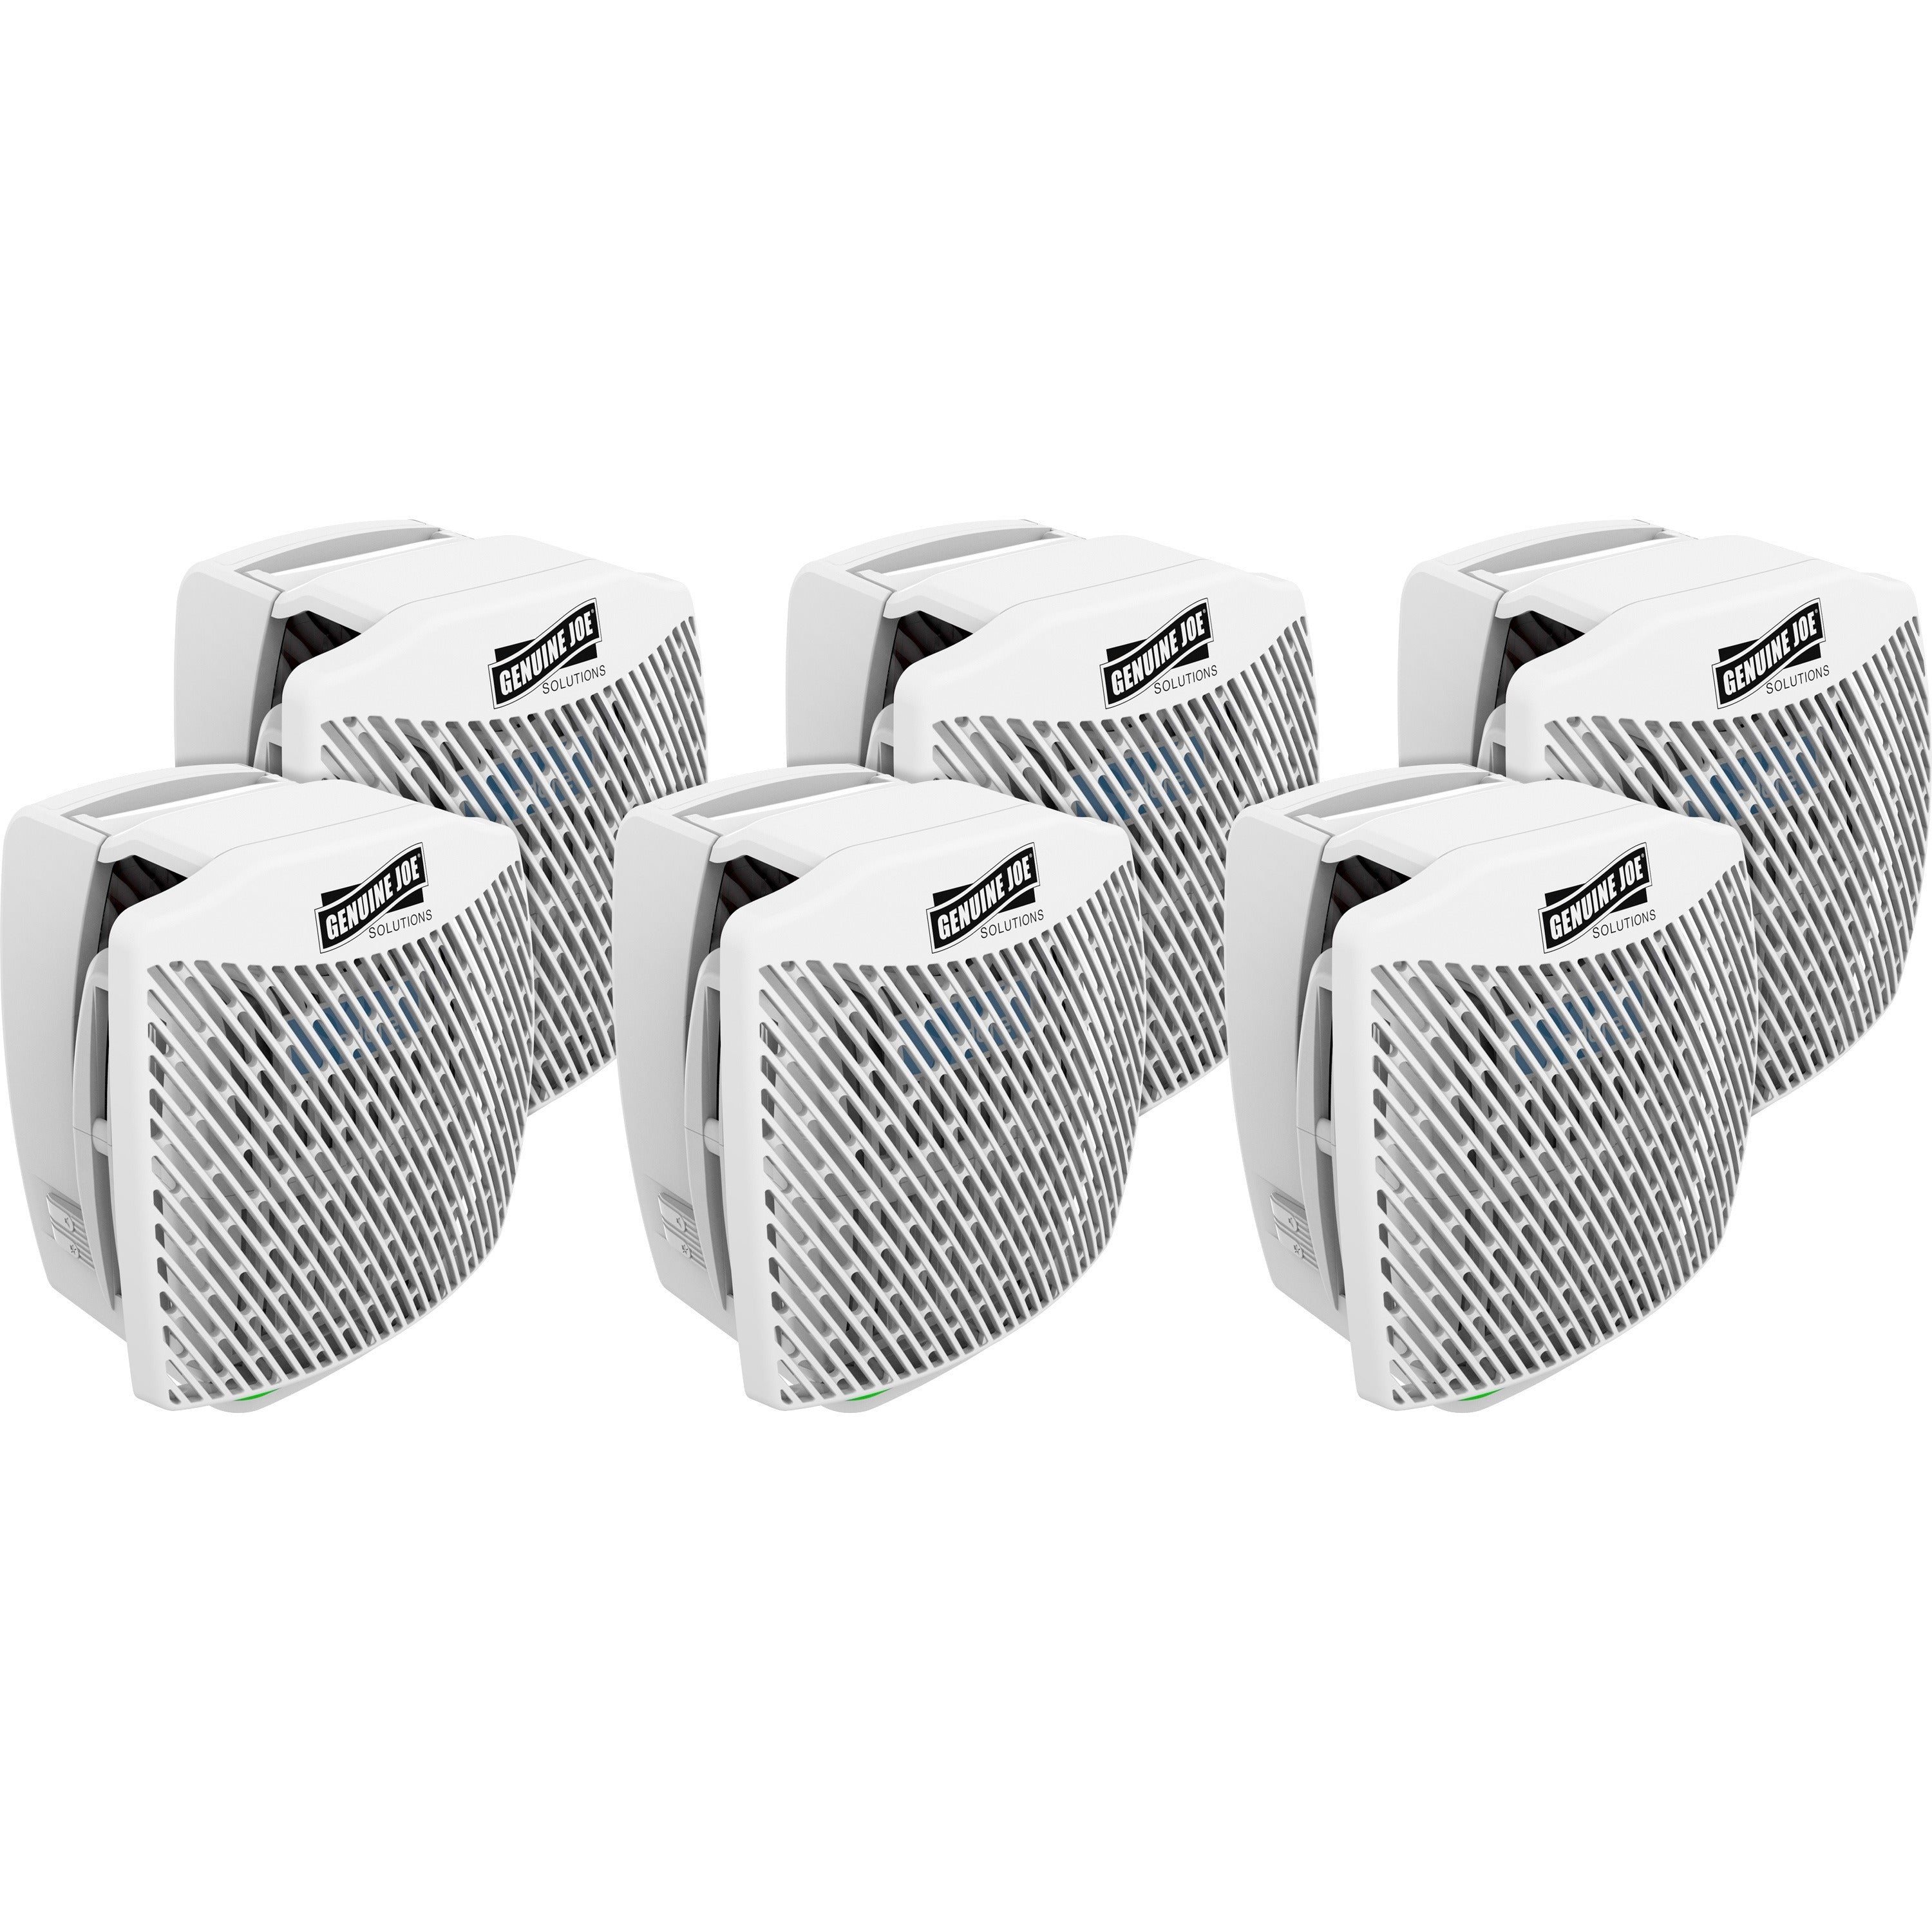 Genuine Joe Air Freshener Dispenser System - 30 Day Refill Life - 6000 ft Coverage - 6 / Carton - White - 1